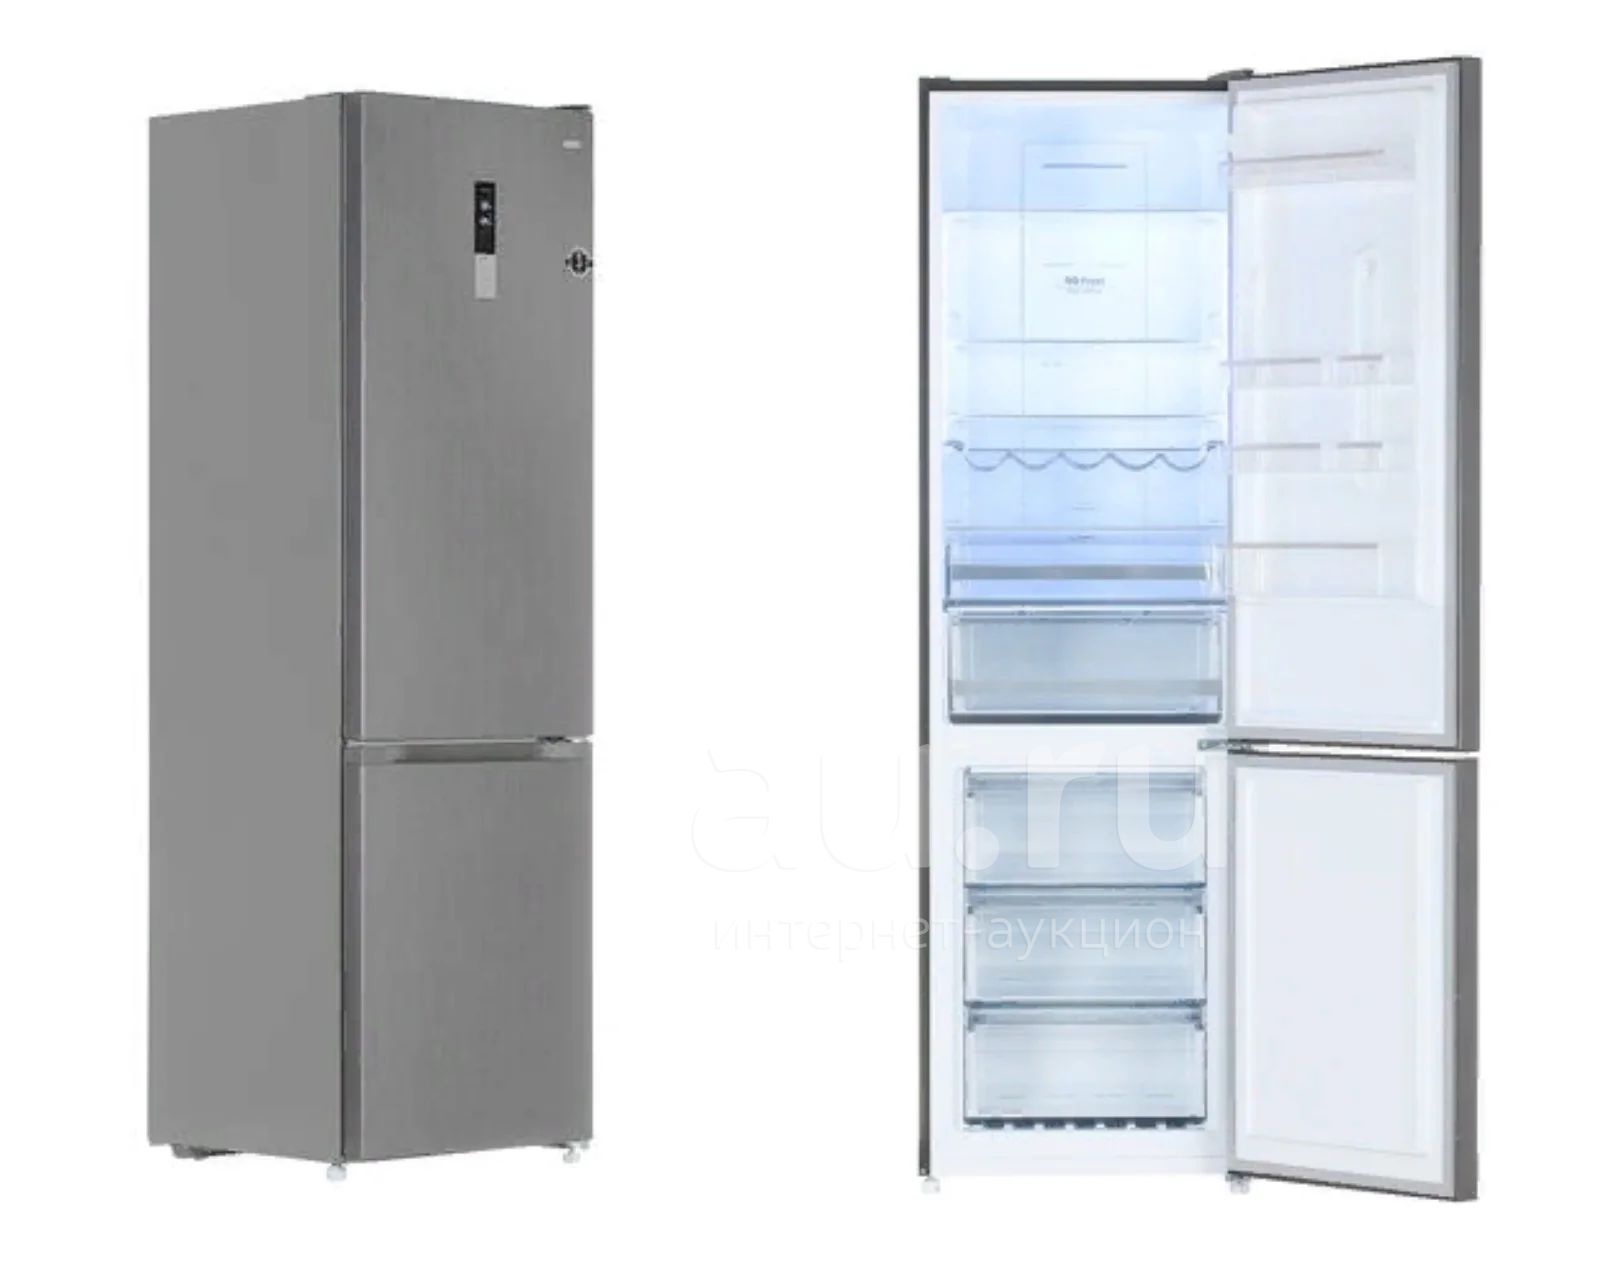 Холодильник с морозильником dexp rf. Холодильник с морозильником DEXP RF-cn350dmg/s. Холодильник DEXP RF-cn350dmg/s серебристый. Холодильник с морозильником DEXP RF-cn350dmg/s серебристый. Холодильник с морозильником DEXP RF-cn350dmg/s белый.